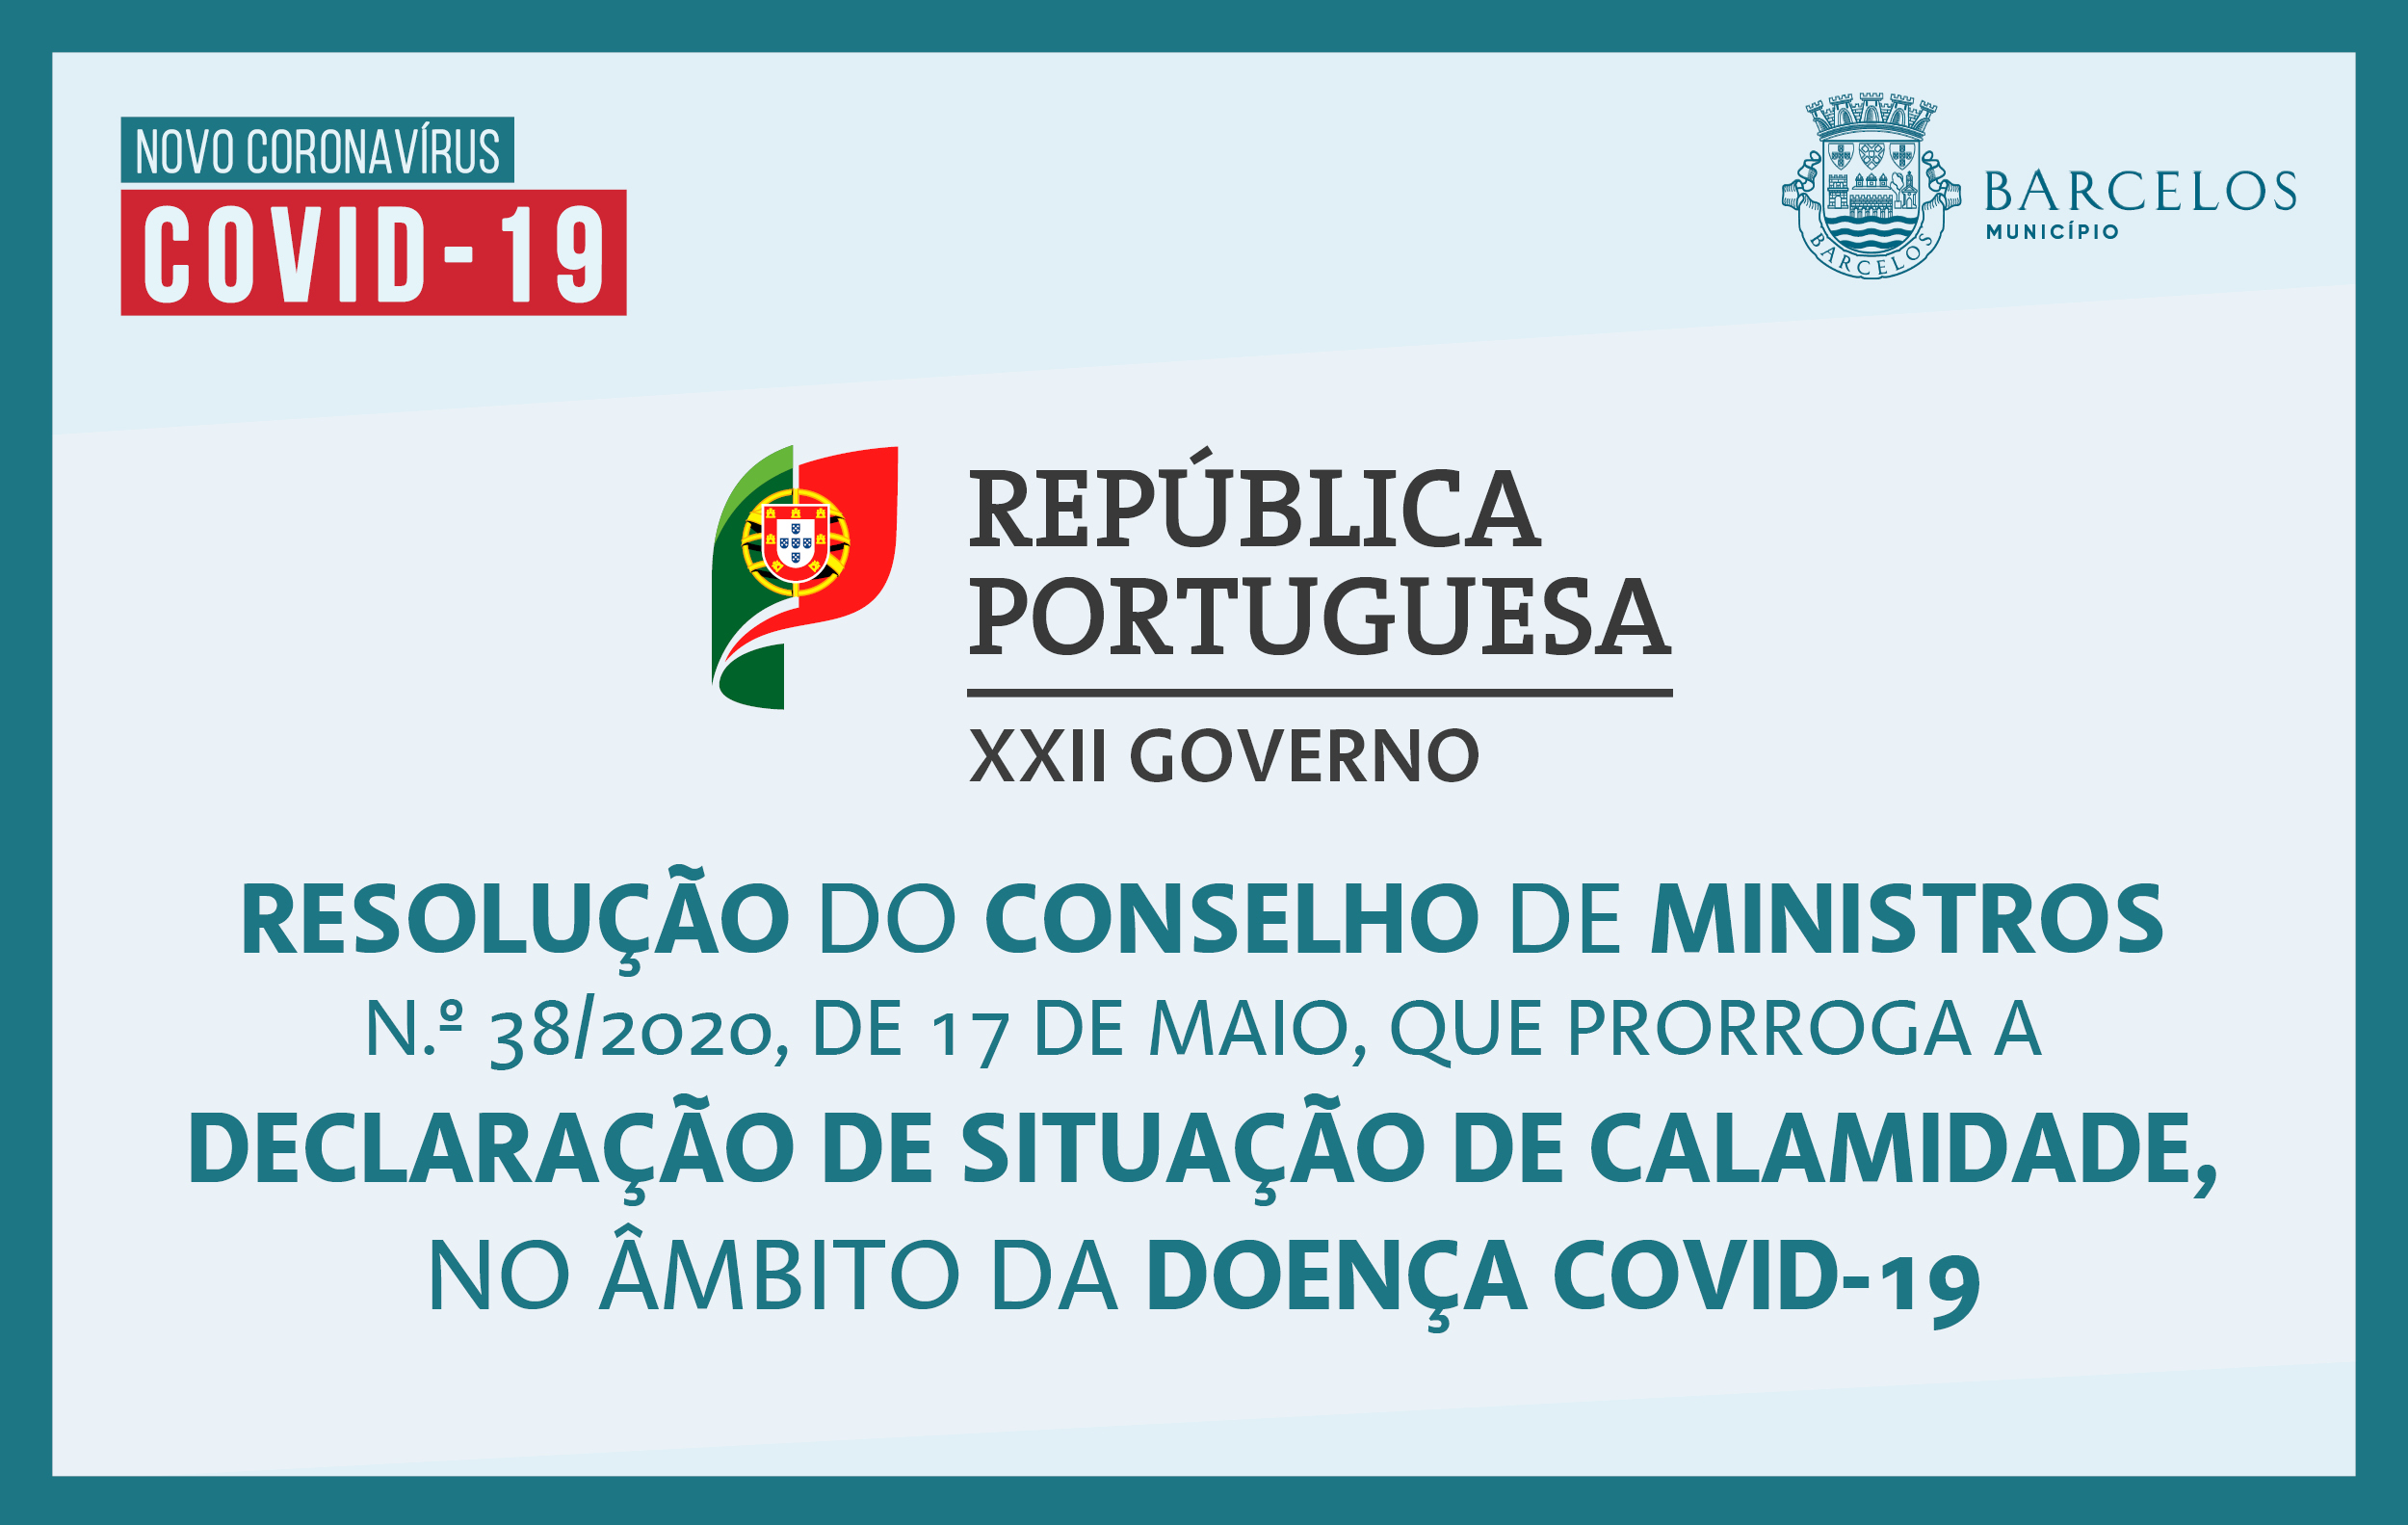 Resolução do Conselho de Ministros n.º 38/2020, de 17 de maio, que prorroga a declaração de situação de calamidade, no âmbito da doença Covid-19.